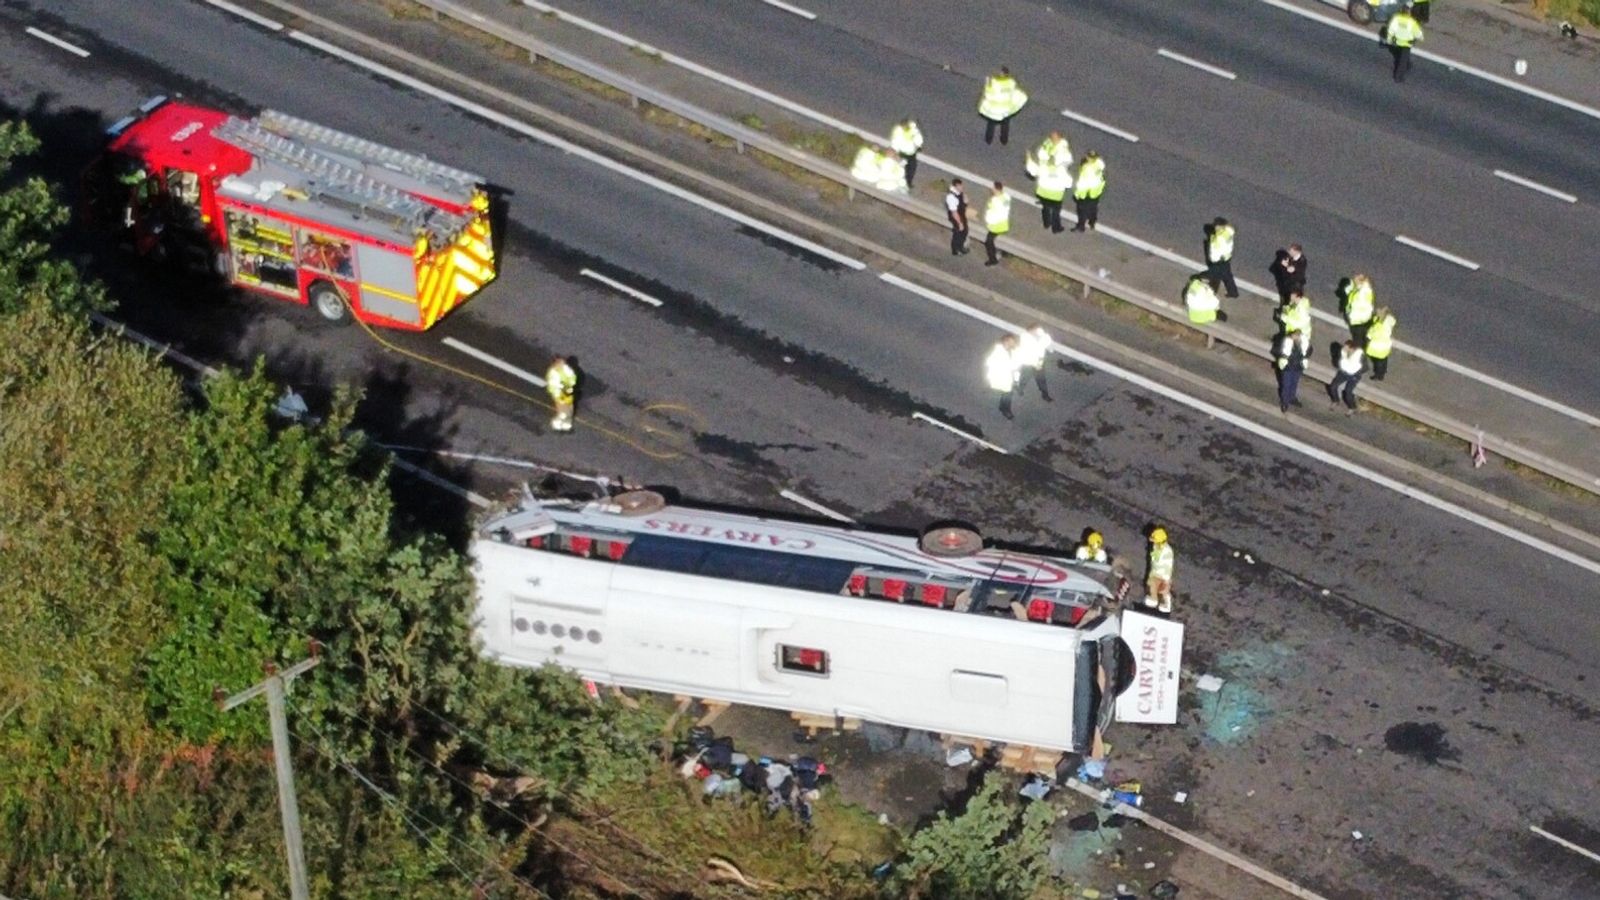 Accident de bus scolaire M53 : un survivant décrit un « choc » et des flashbacks après la mort de l’élève Jessica Baker et du chauffeur Stephen Shrimpton |  Nouvelles du Royaume-Uni